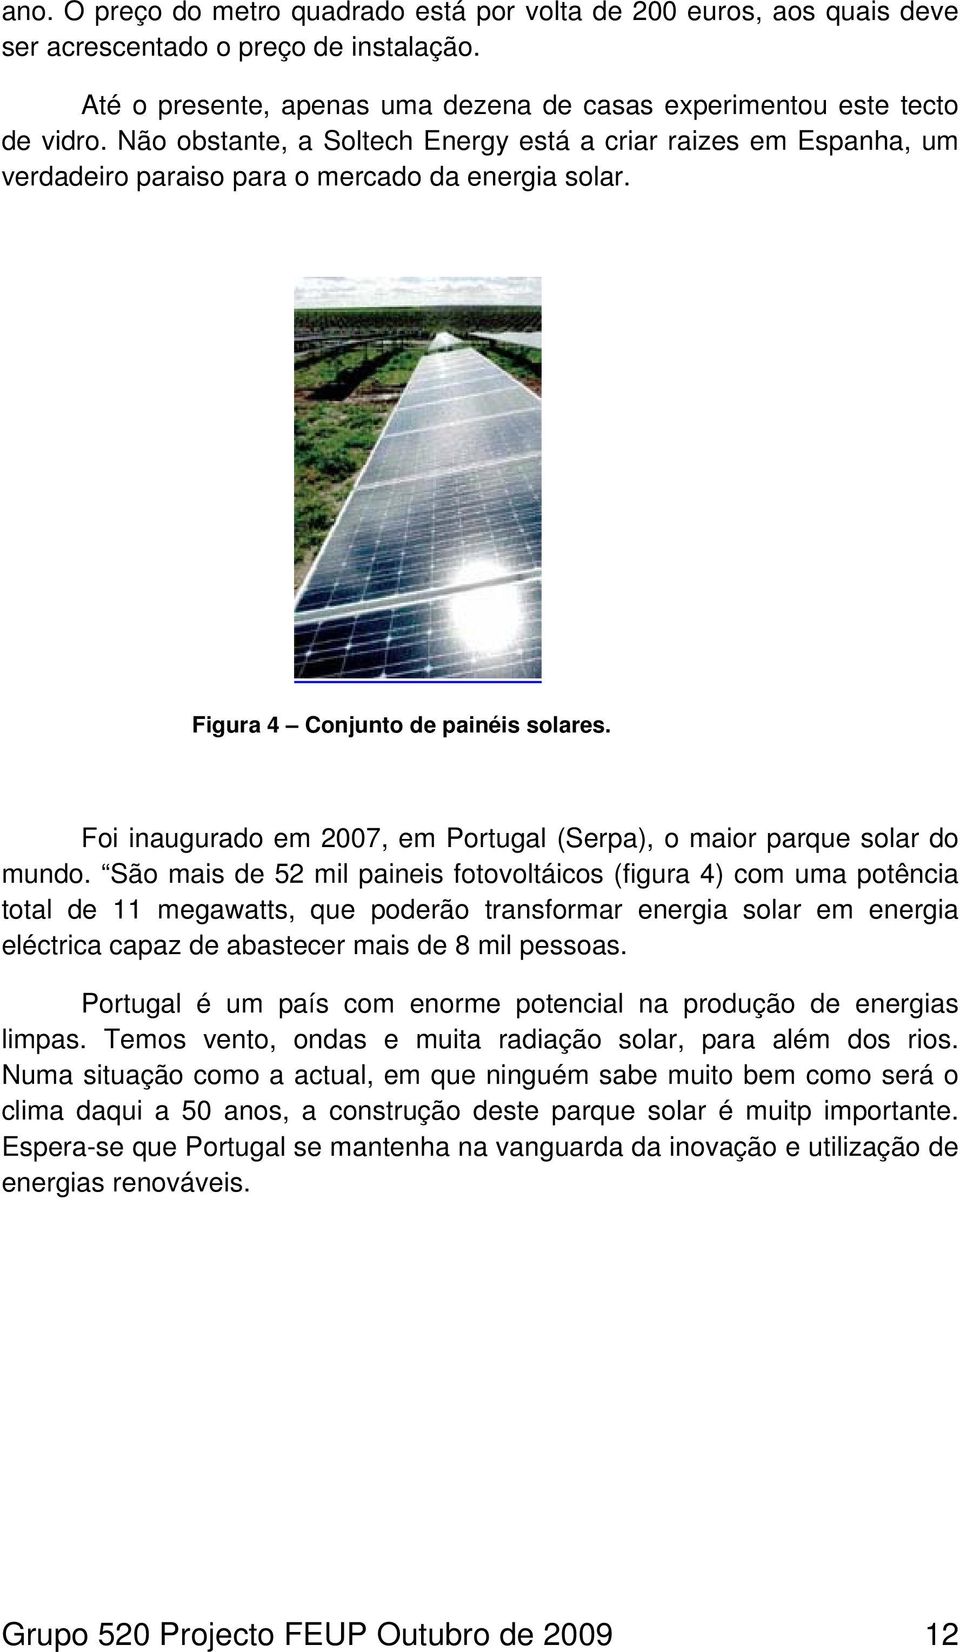 Foi inaugurado em 2007, em Portugal (Serpa), o maior parque solar do mundo.